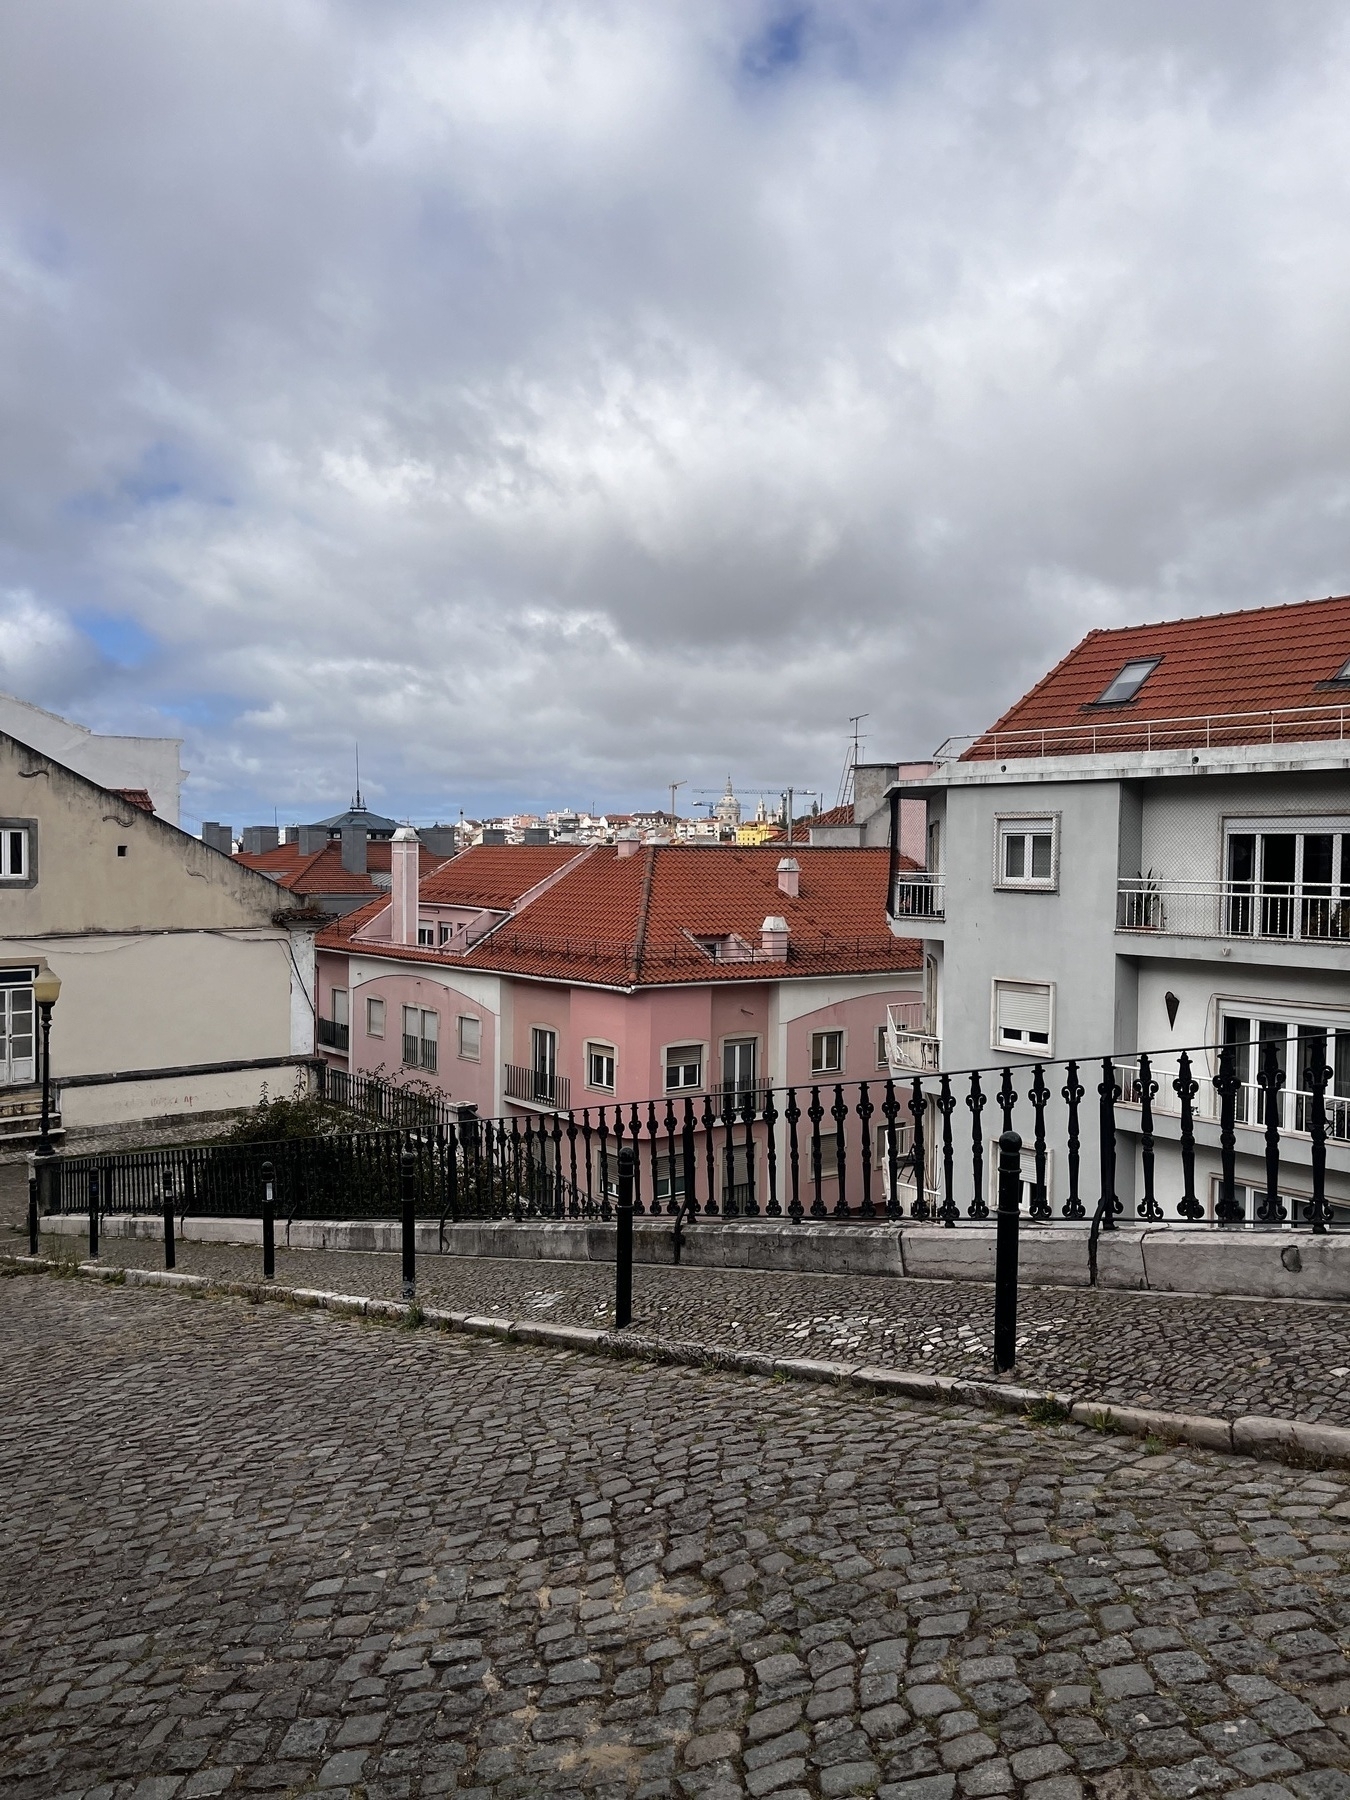 A rooftop scene in Lisbon